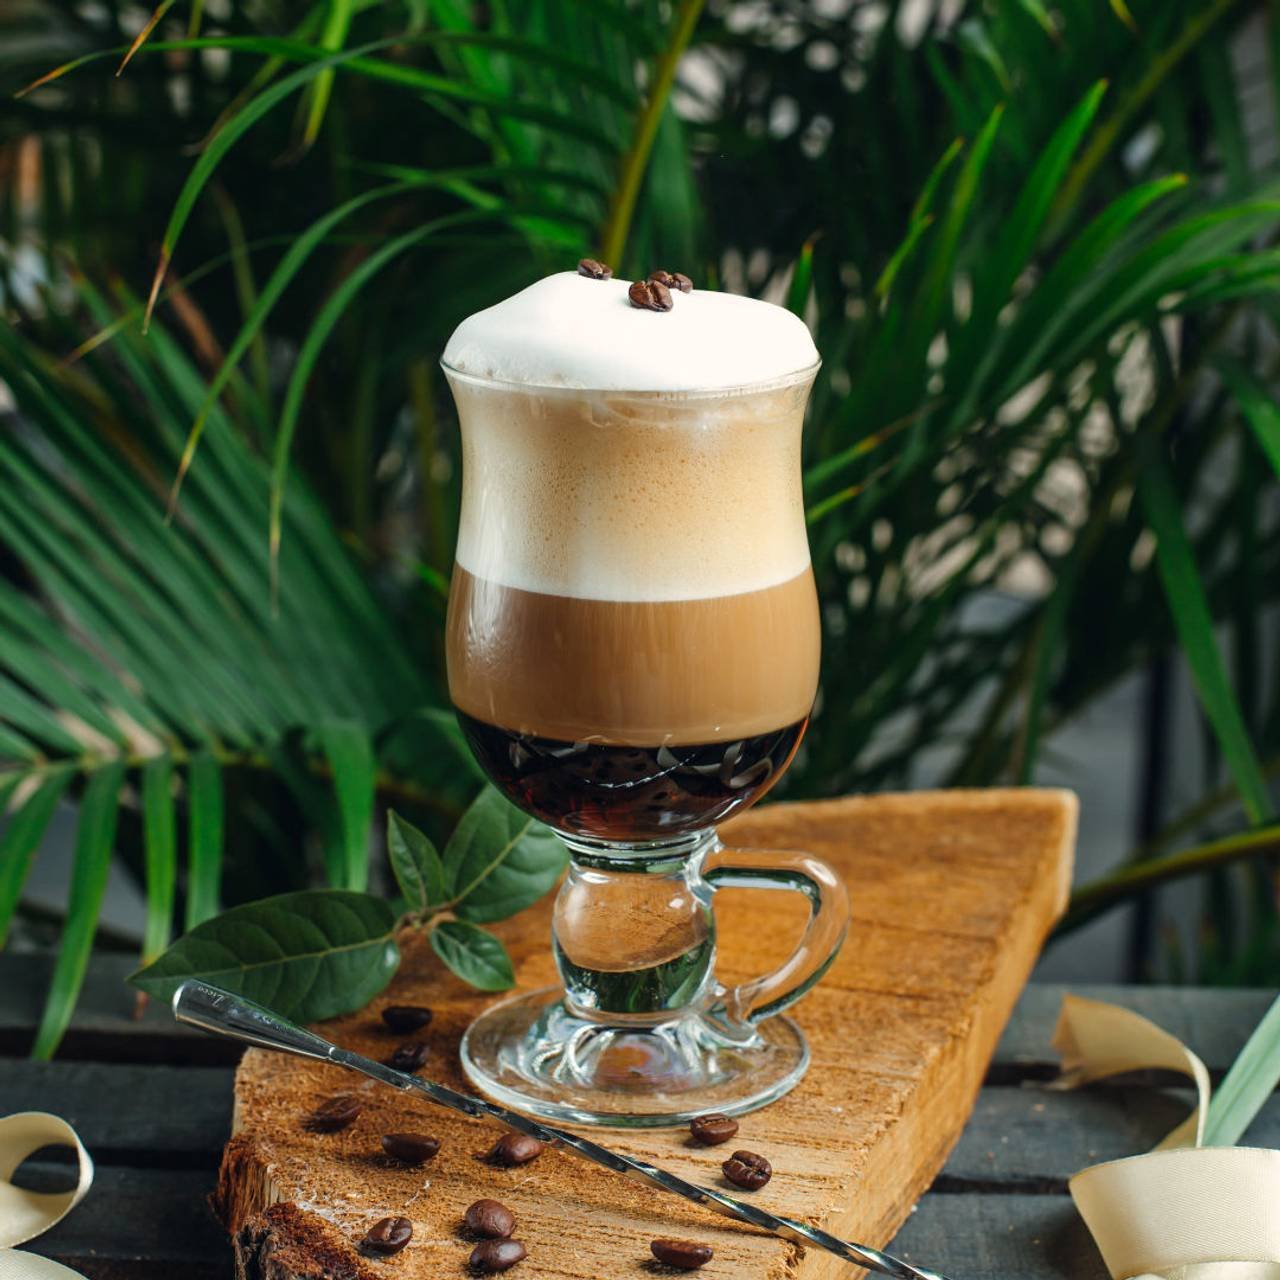 cafe em camadas com creme e graos de cafe na placa de madeira rustica 